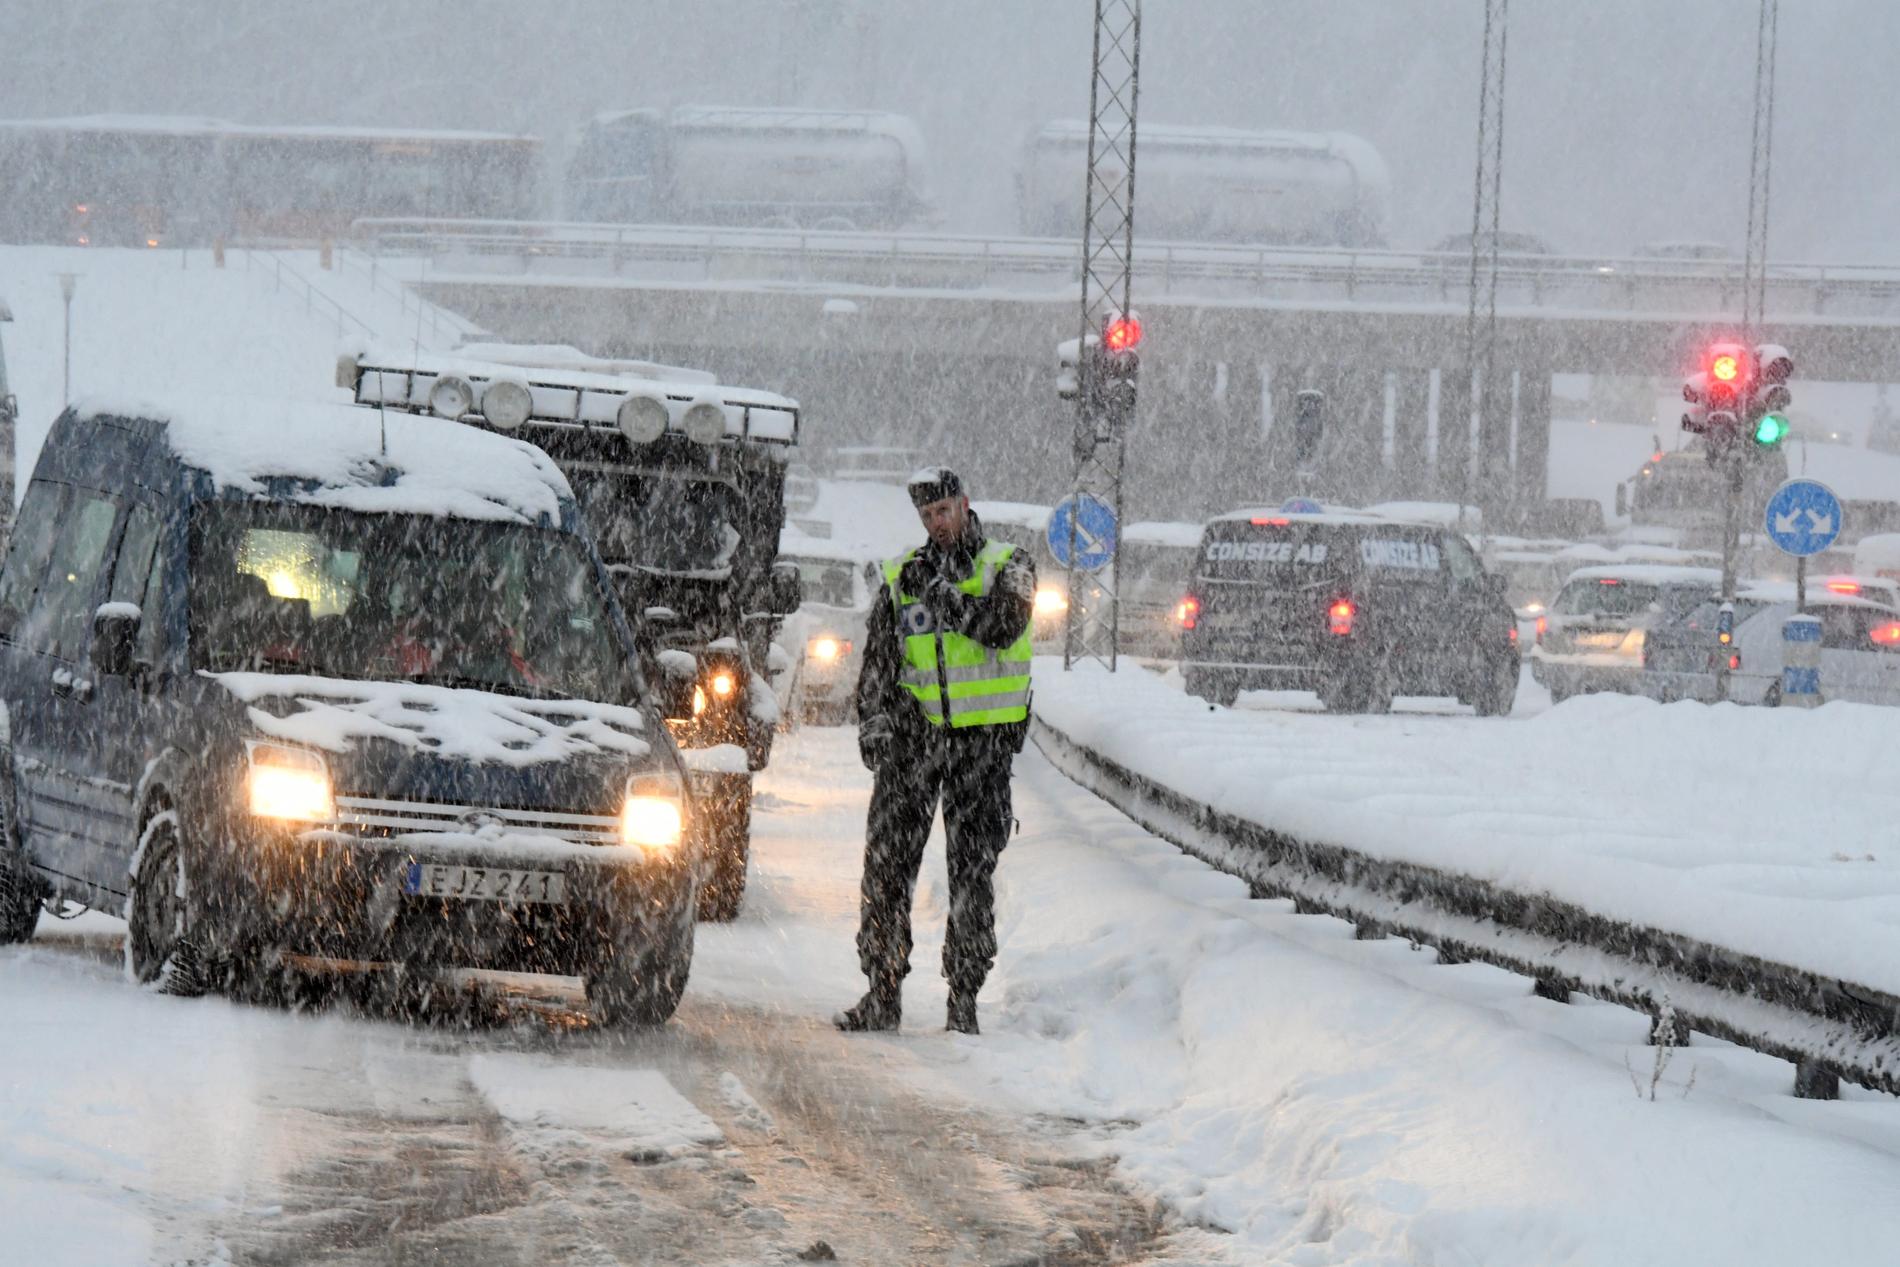 ARKIVBILD. Mycket trafik väntas i dag är eftersom många bilister är på väg till sitt julfirande.